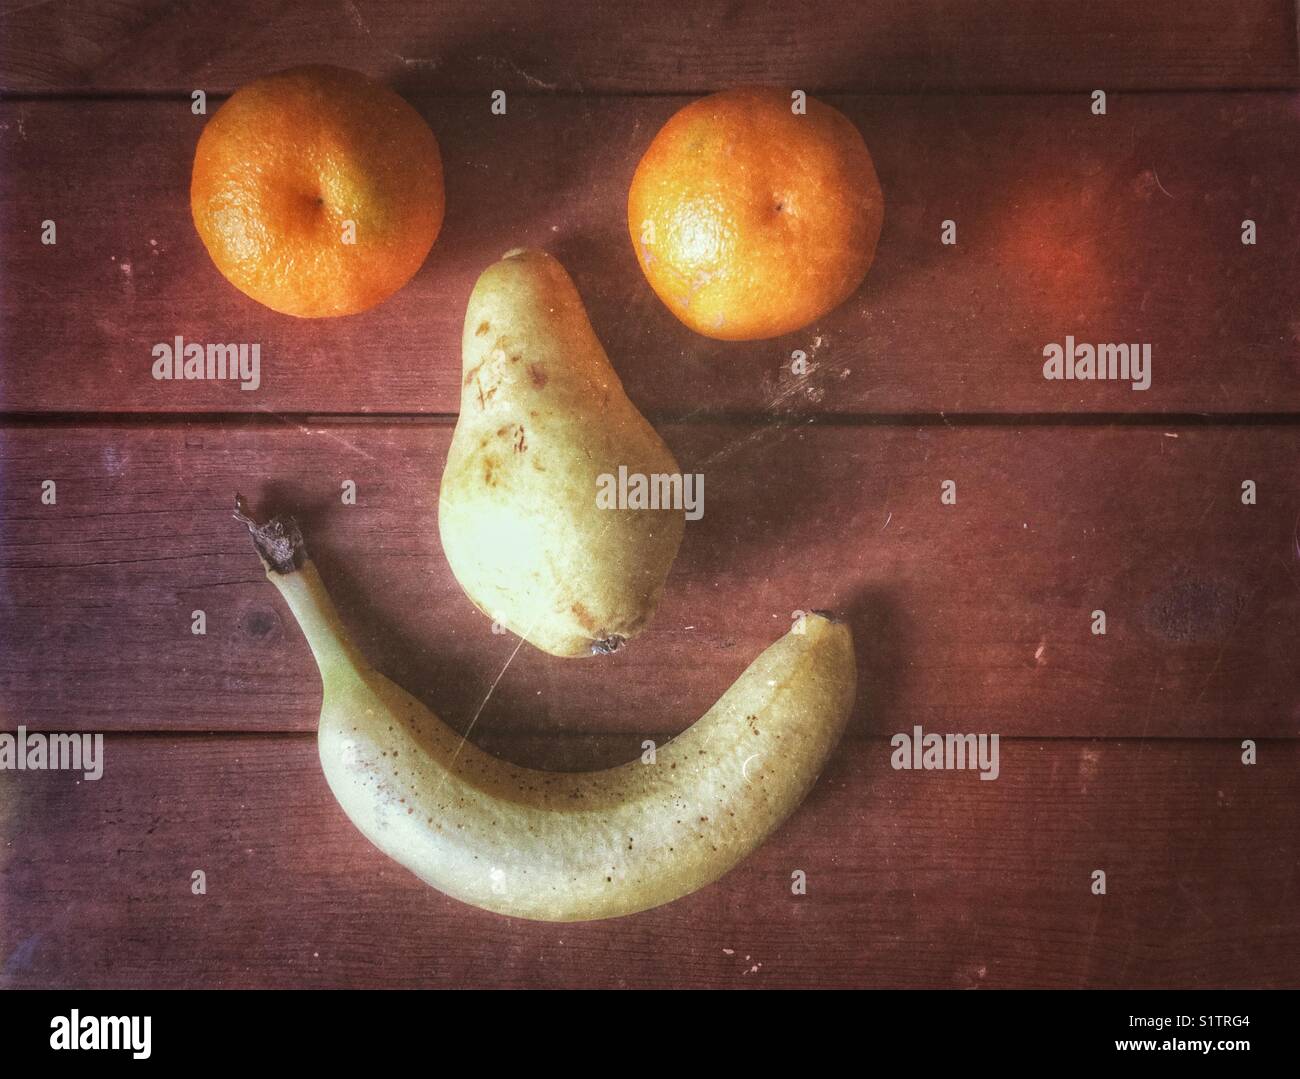 Deux oranges, clémentines une Poire et banane formé pour faire un visage heureux sur des planches Banque D'Images